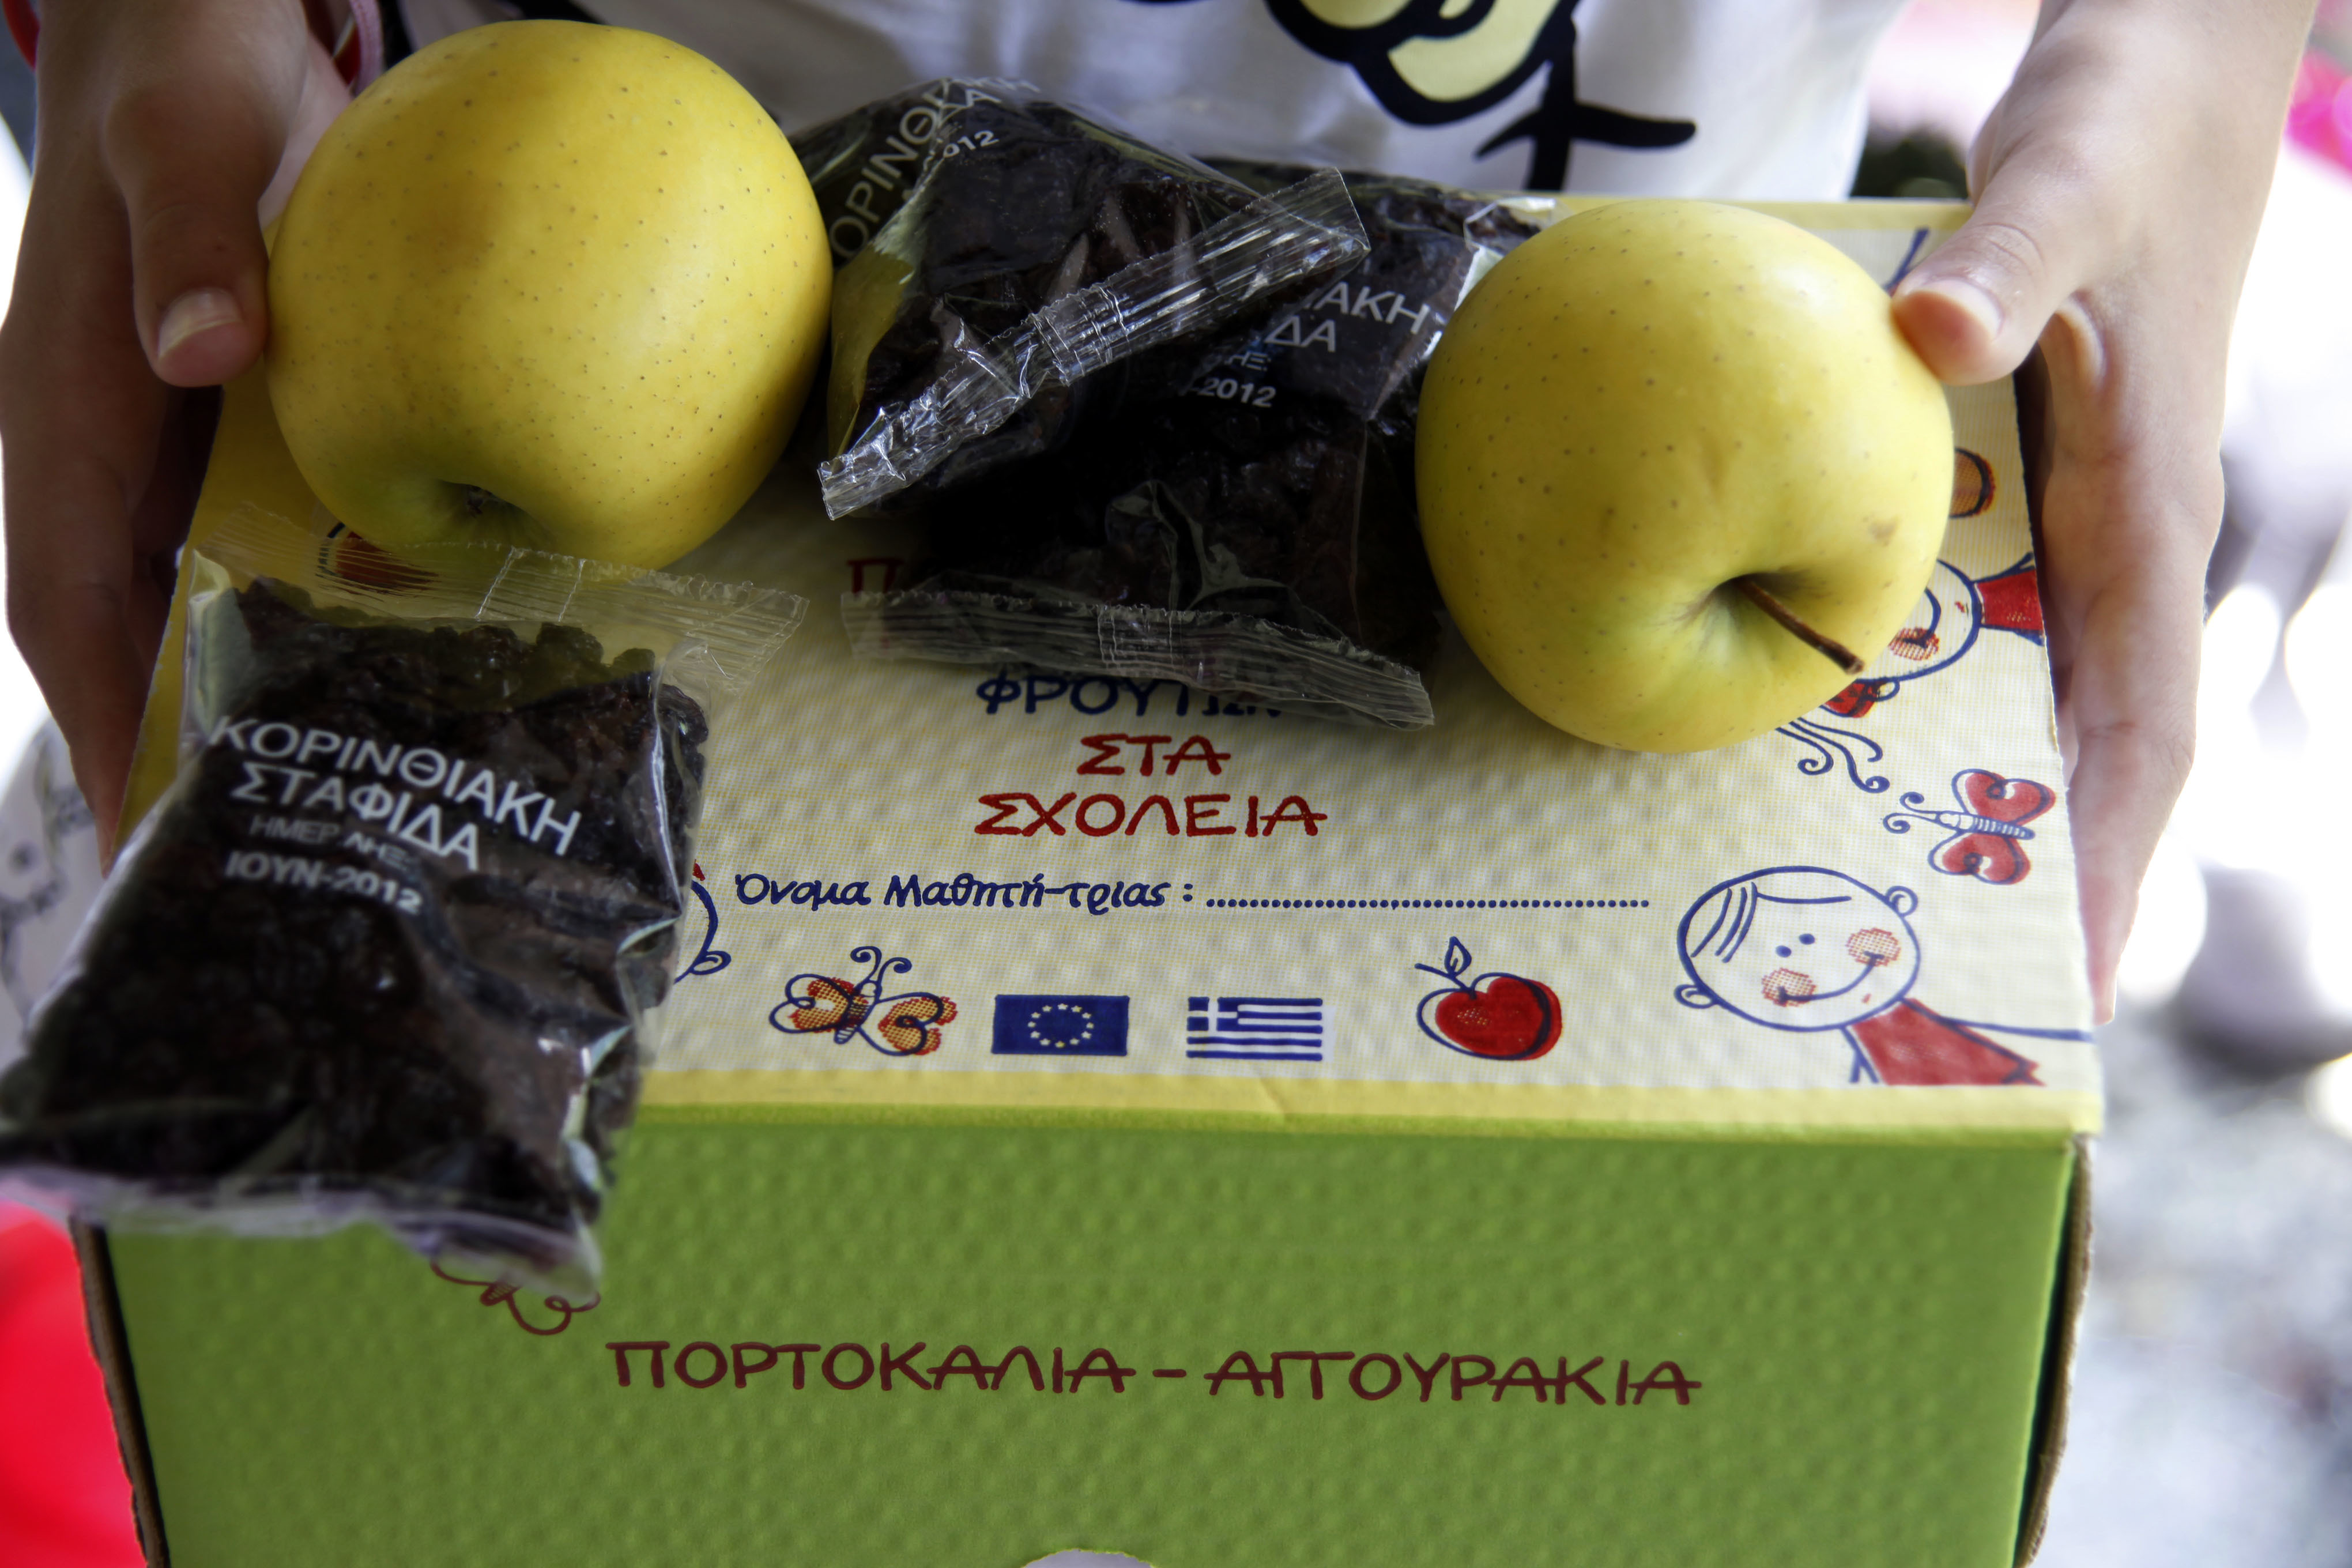 Με ικανοποιητικούς ρυθμούς η δωρεάν διανομή φρούτων σε περίπου 1500 σχολεία σε Αθήνα και Θεσσαλονίκη